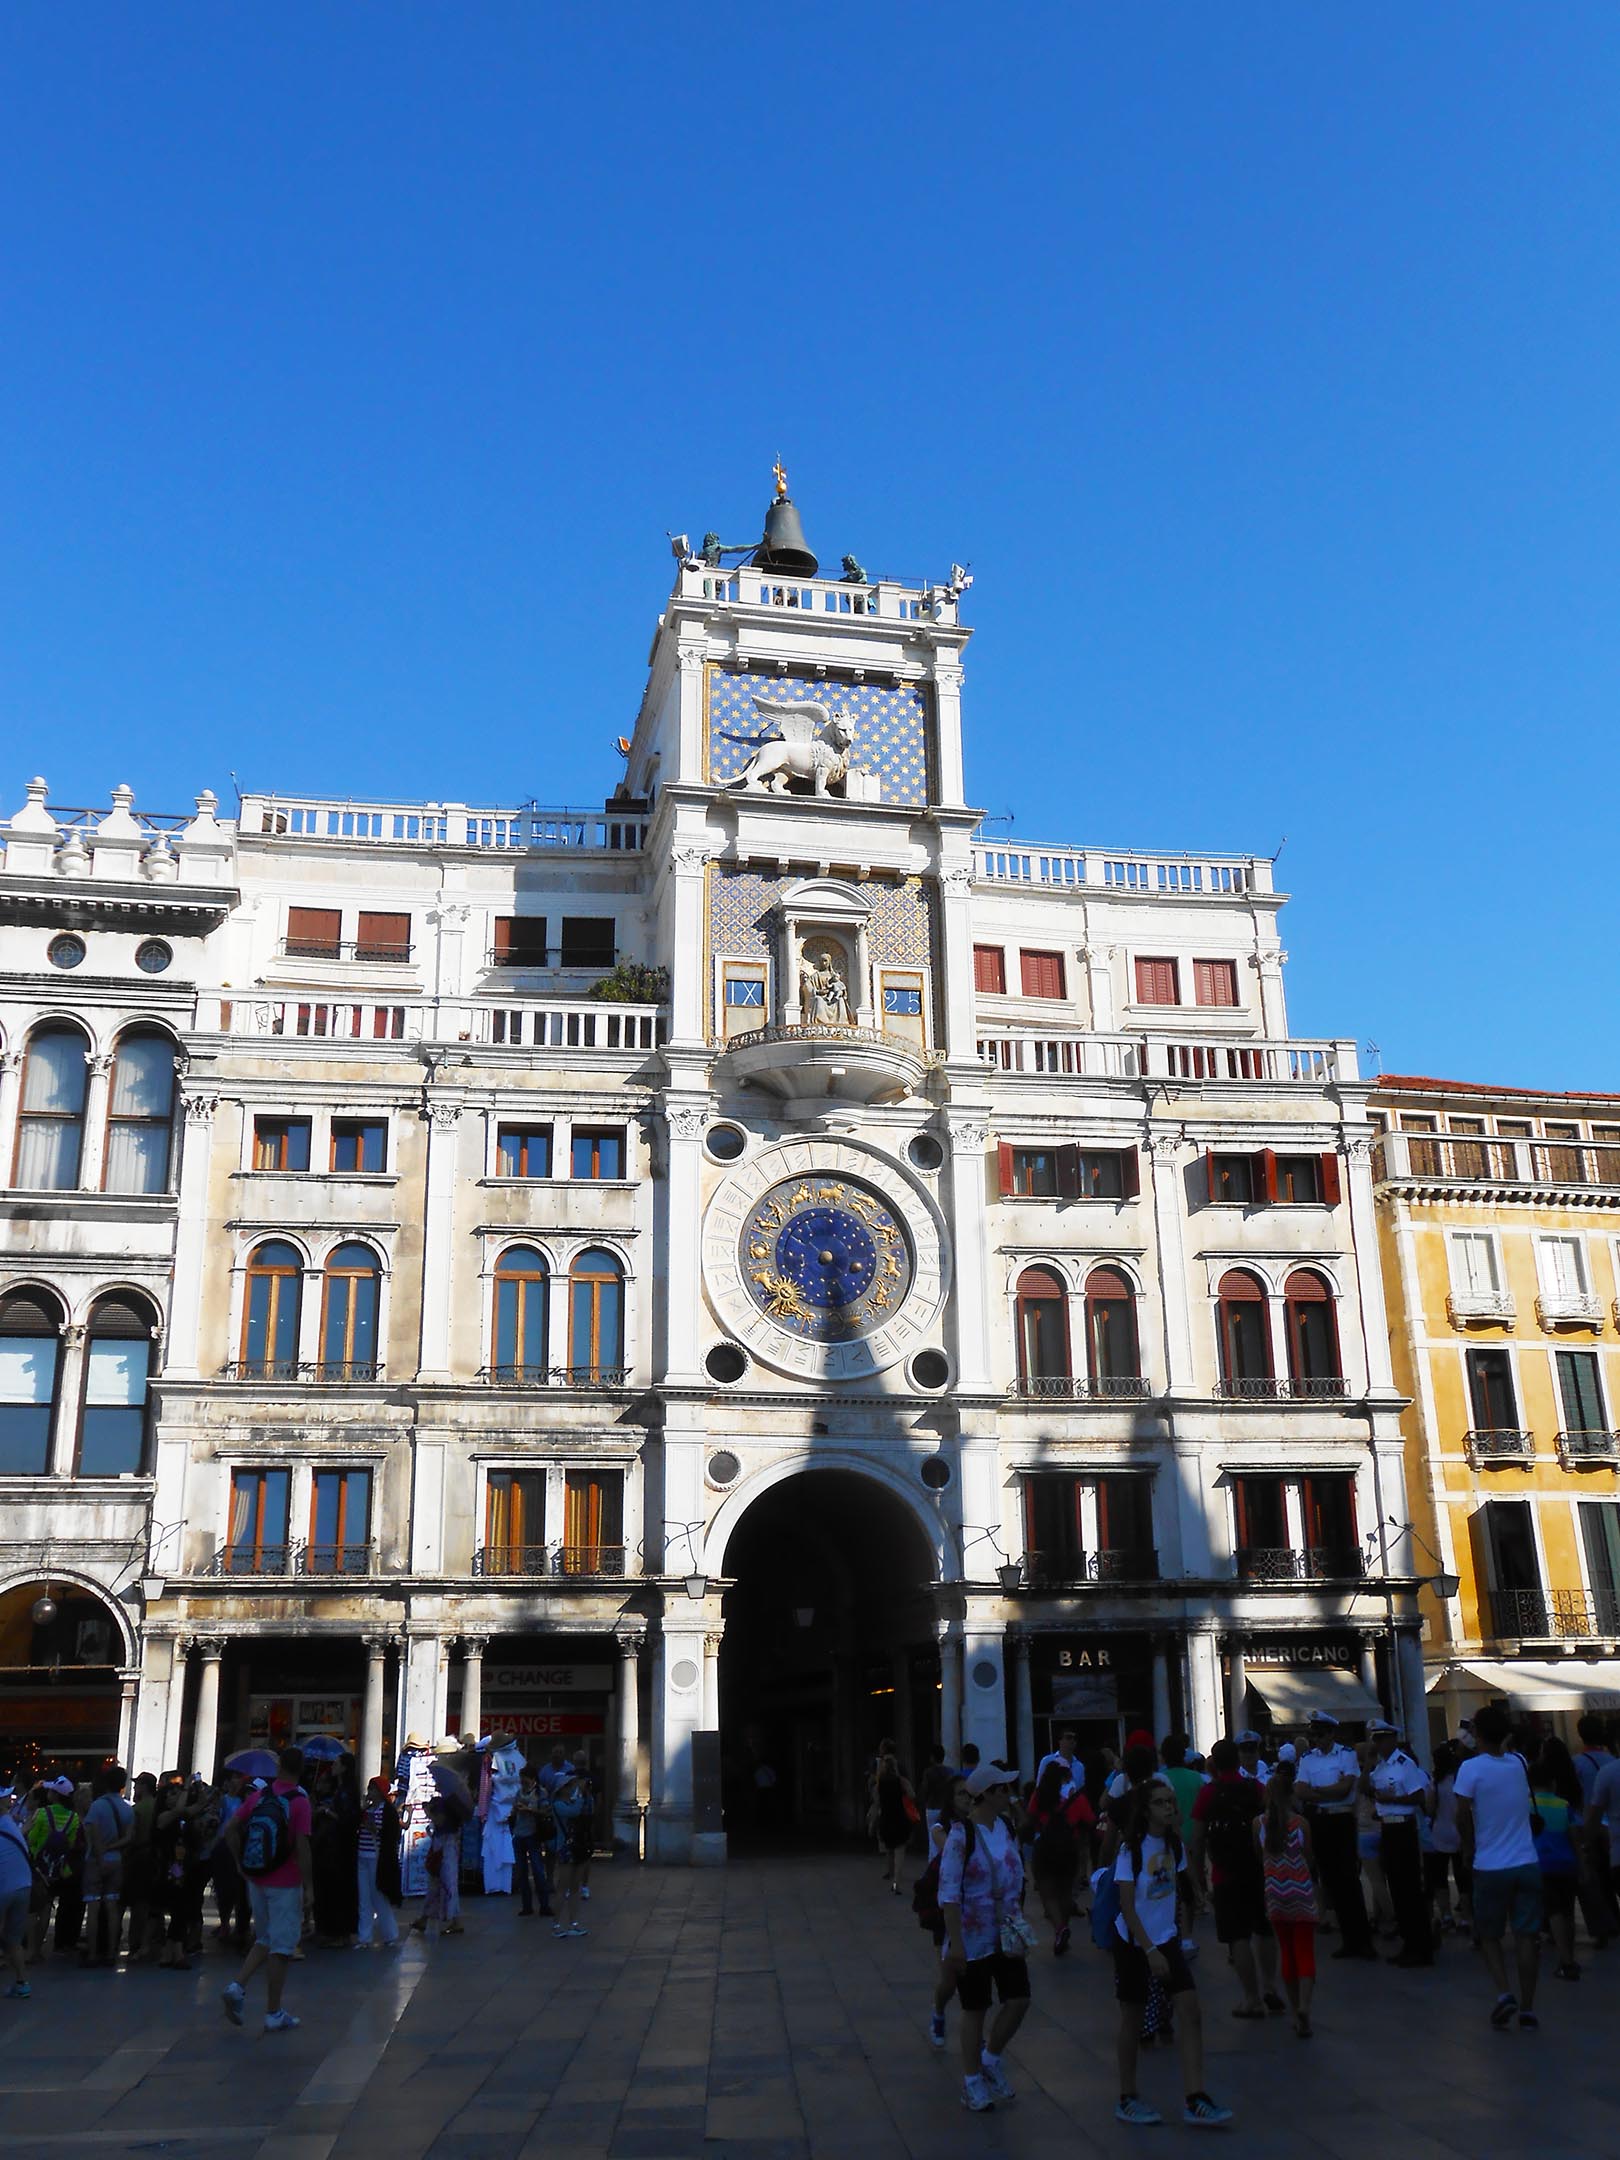 La tour de l'horloge de la place Saint-Marc à Venise